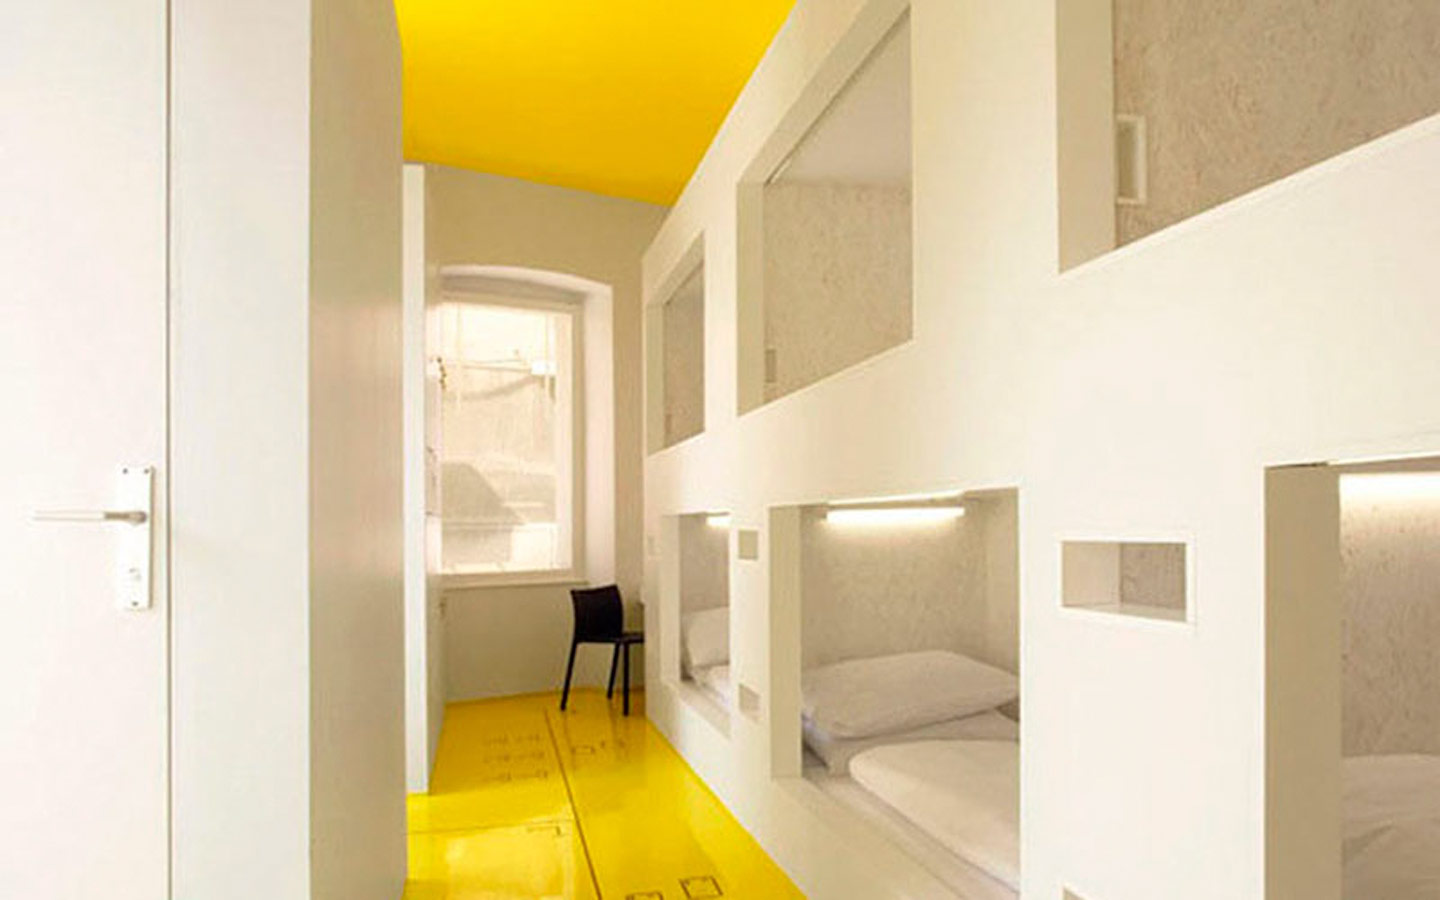 Hostel Goli & Bosi – Eleito um dos mais bonitos da Europa!